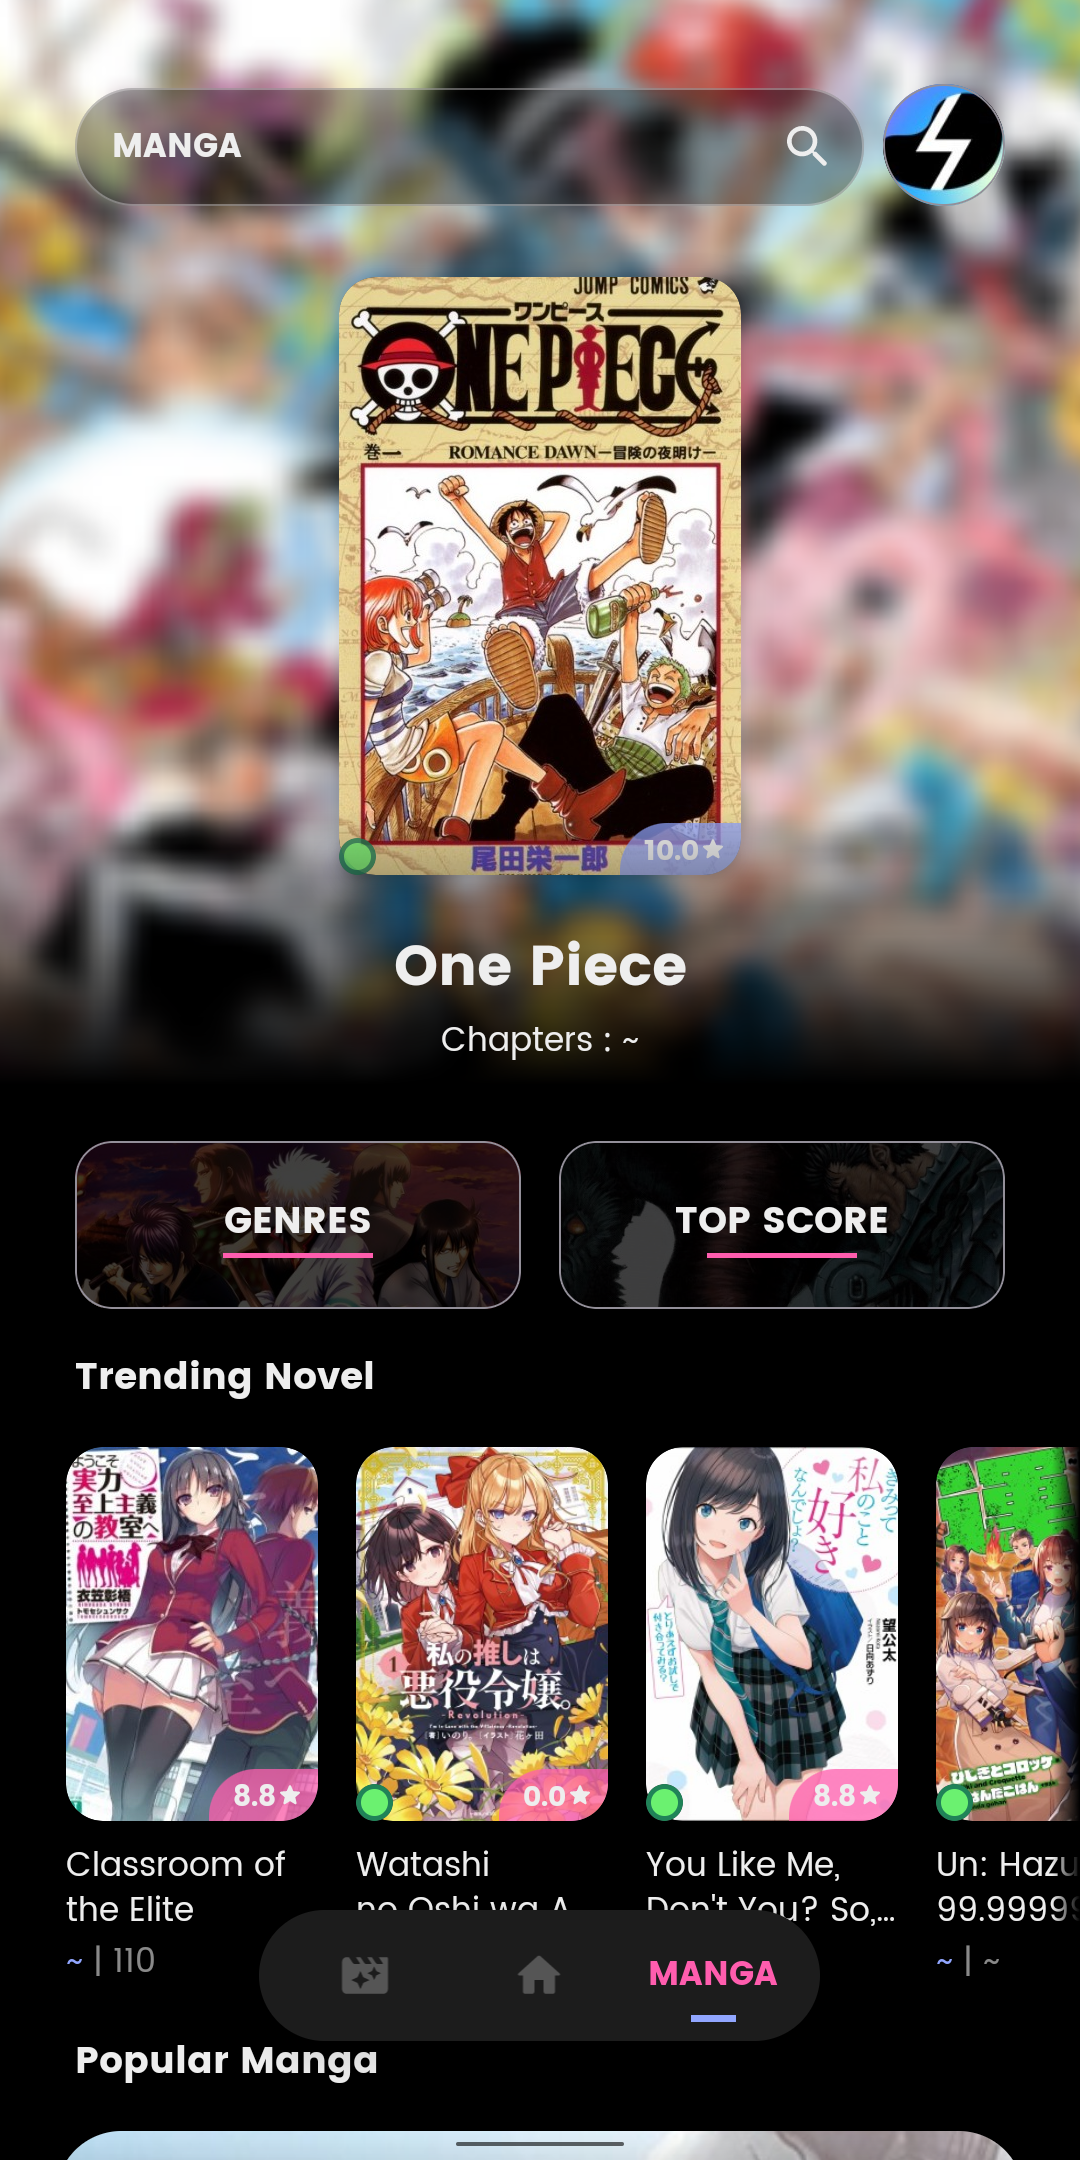 Saikou Anime APK on Android